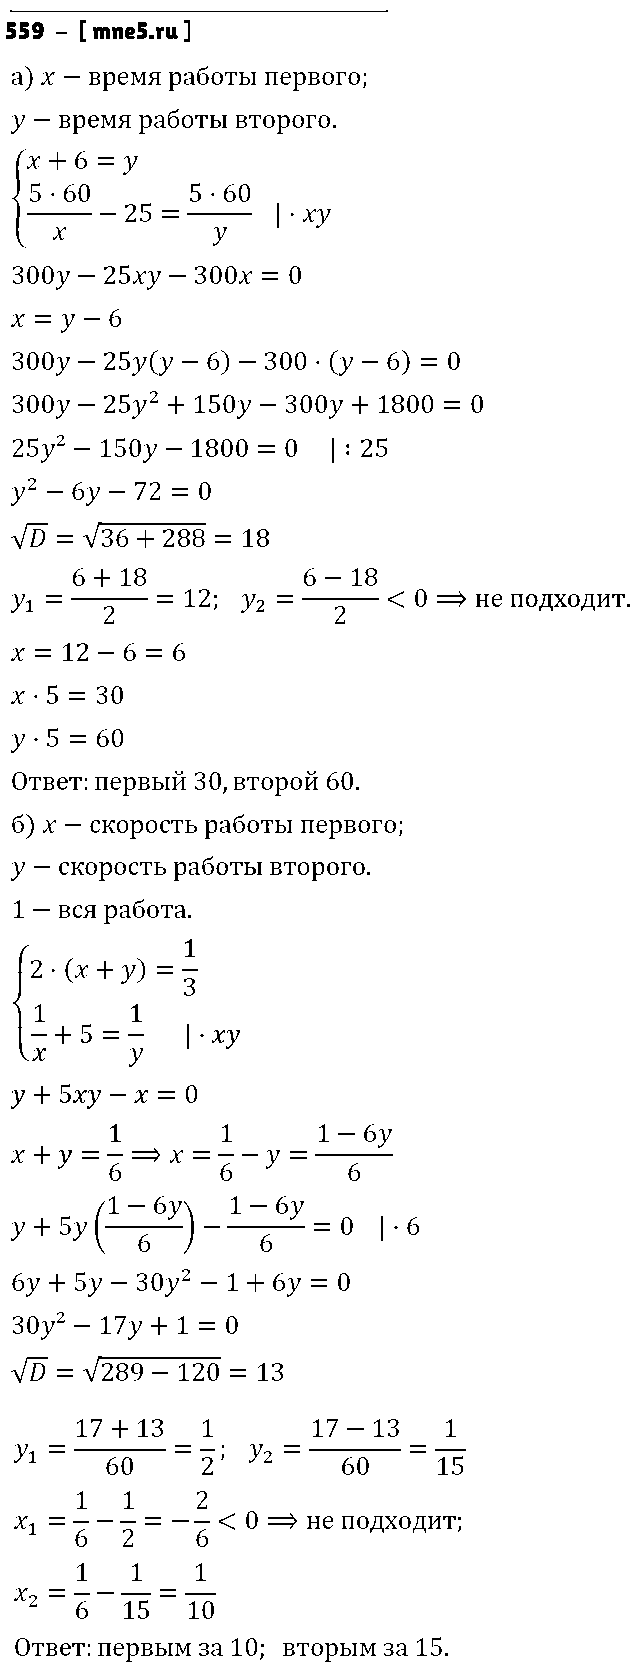 ГДЗ Алгебра 8 класс - 559